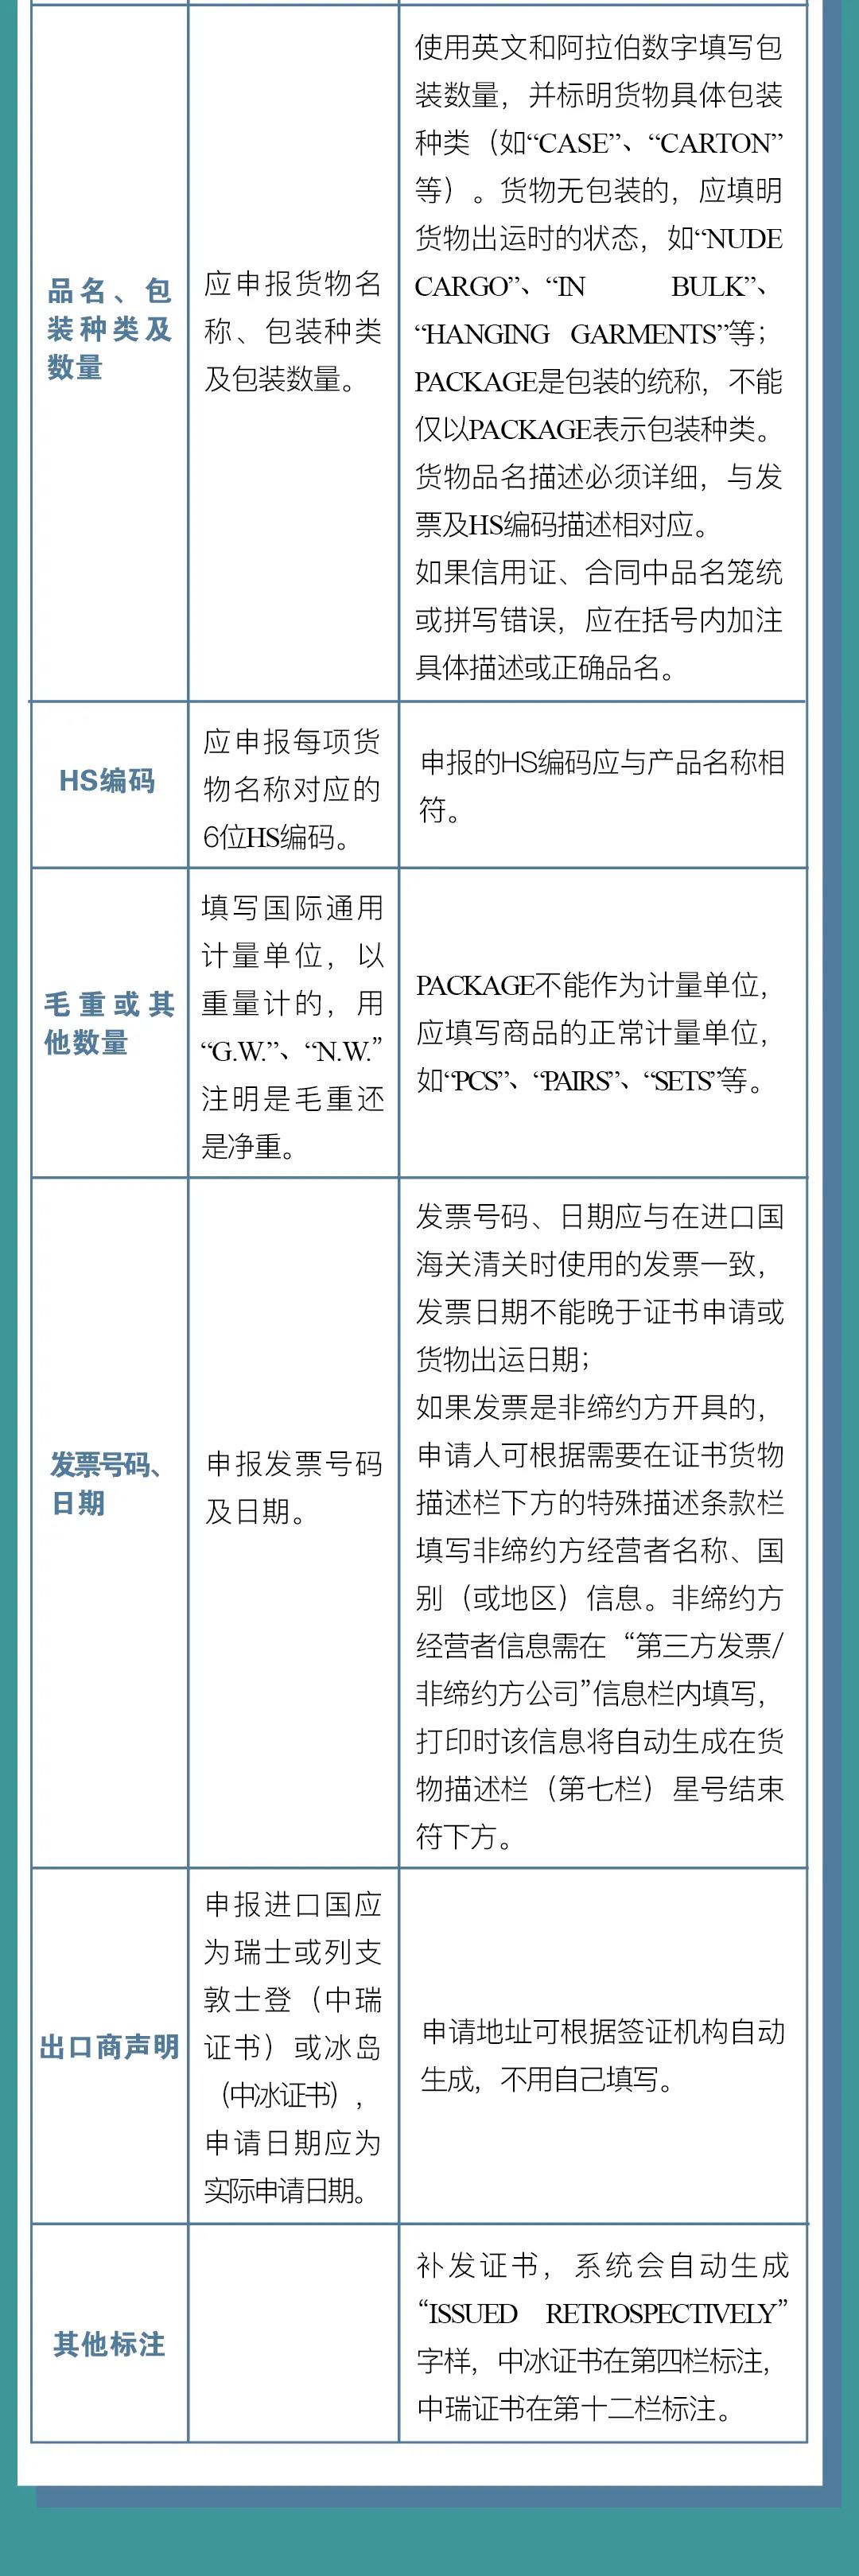 中国-冰岛、中国-瑞士自贸协定原产地证书申报指南